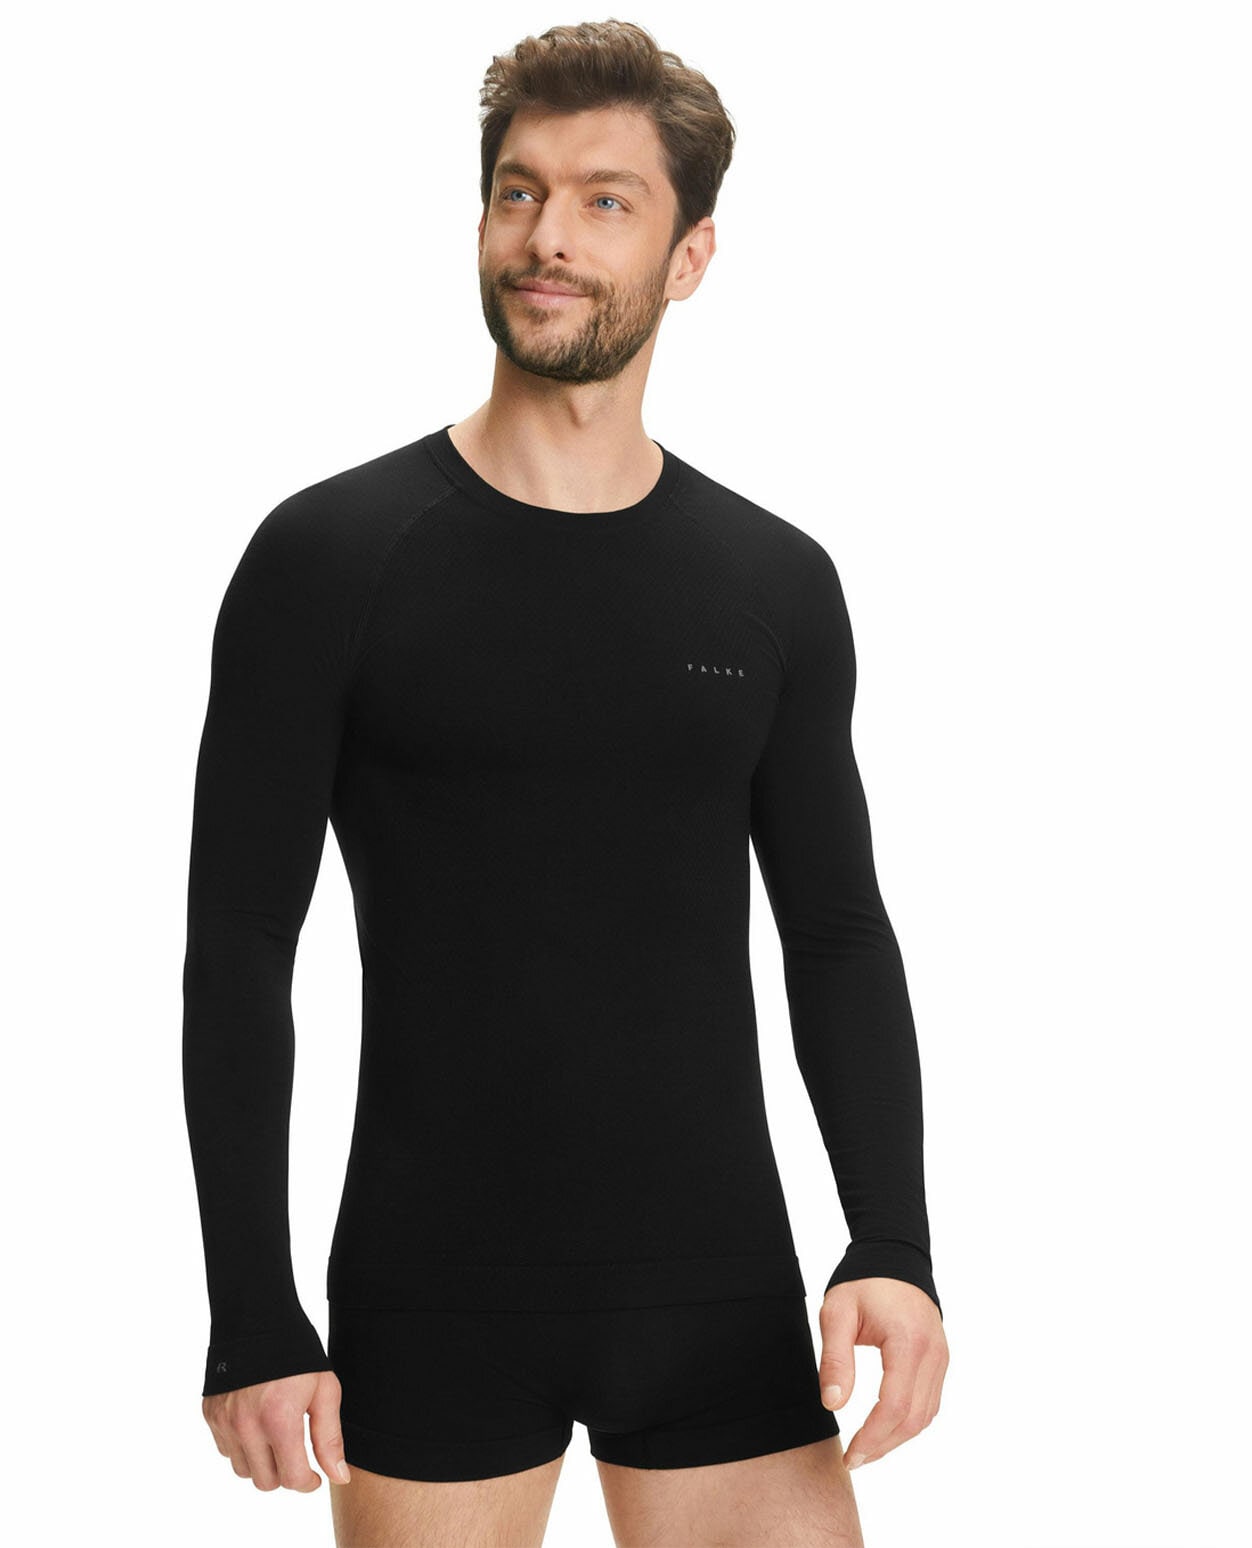 Falke Wool-Tech Light M LS Shirt Black